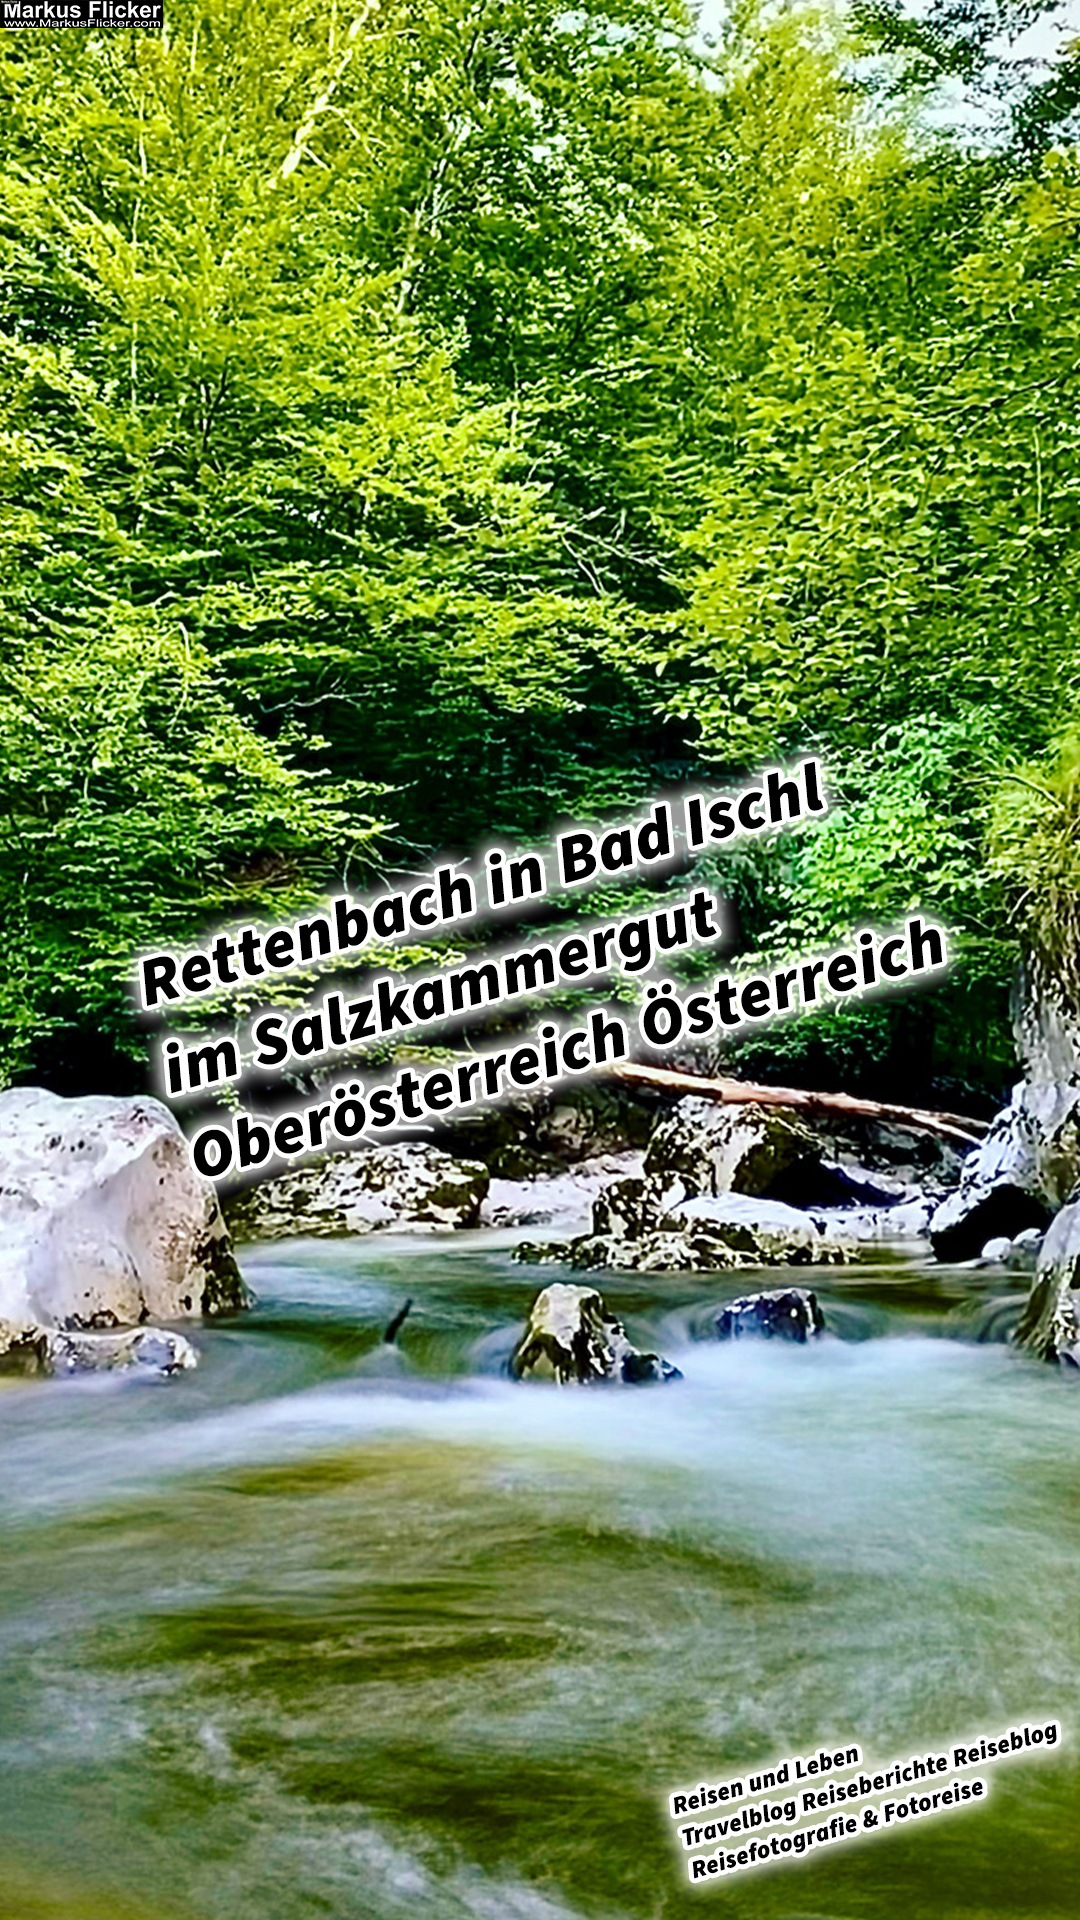 Rettenbach in Bad Ischl im Salzkammergut Oberösterreich Österreich #sommerfrische #visitsalzkammergut #bergeseen #visitaustria